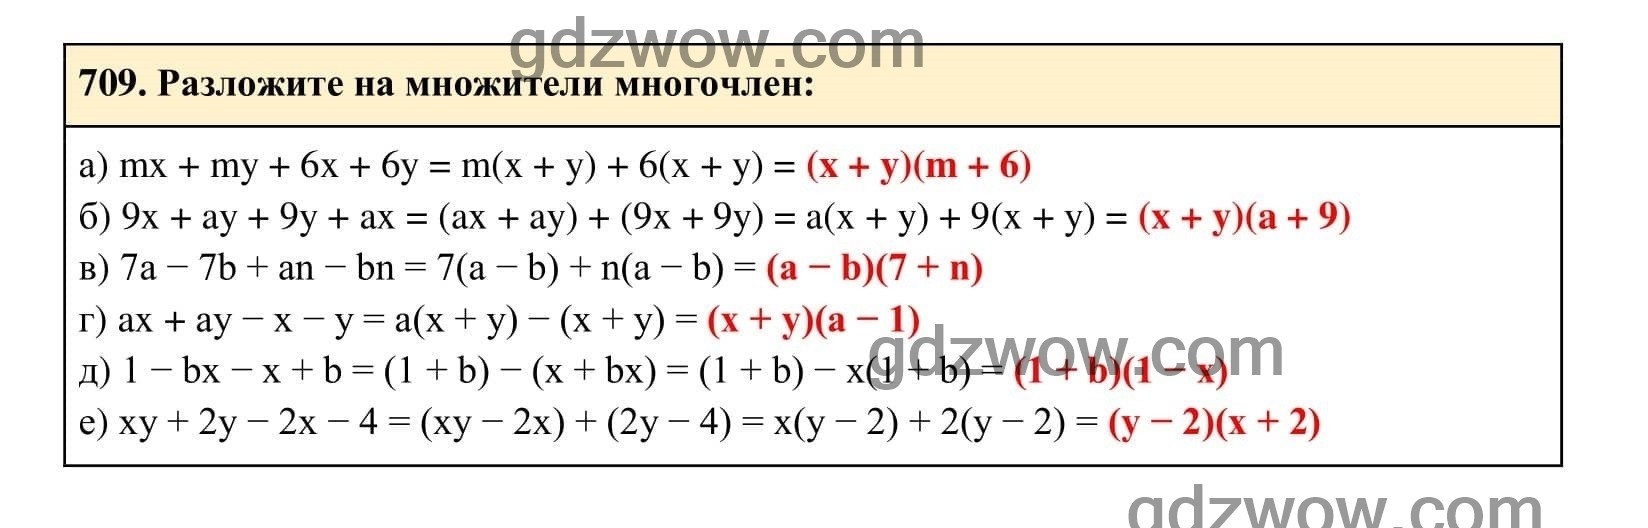 Упражнение 709 - ГДЗ по Алгебре 7 класс Учебник Макарычев (решебник) - GDZwow